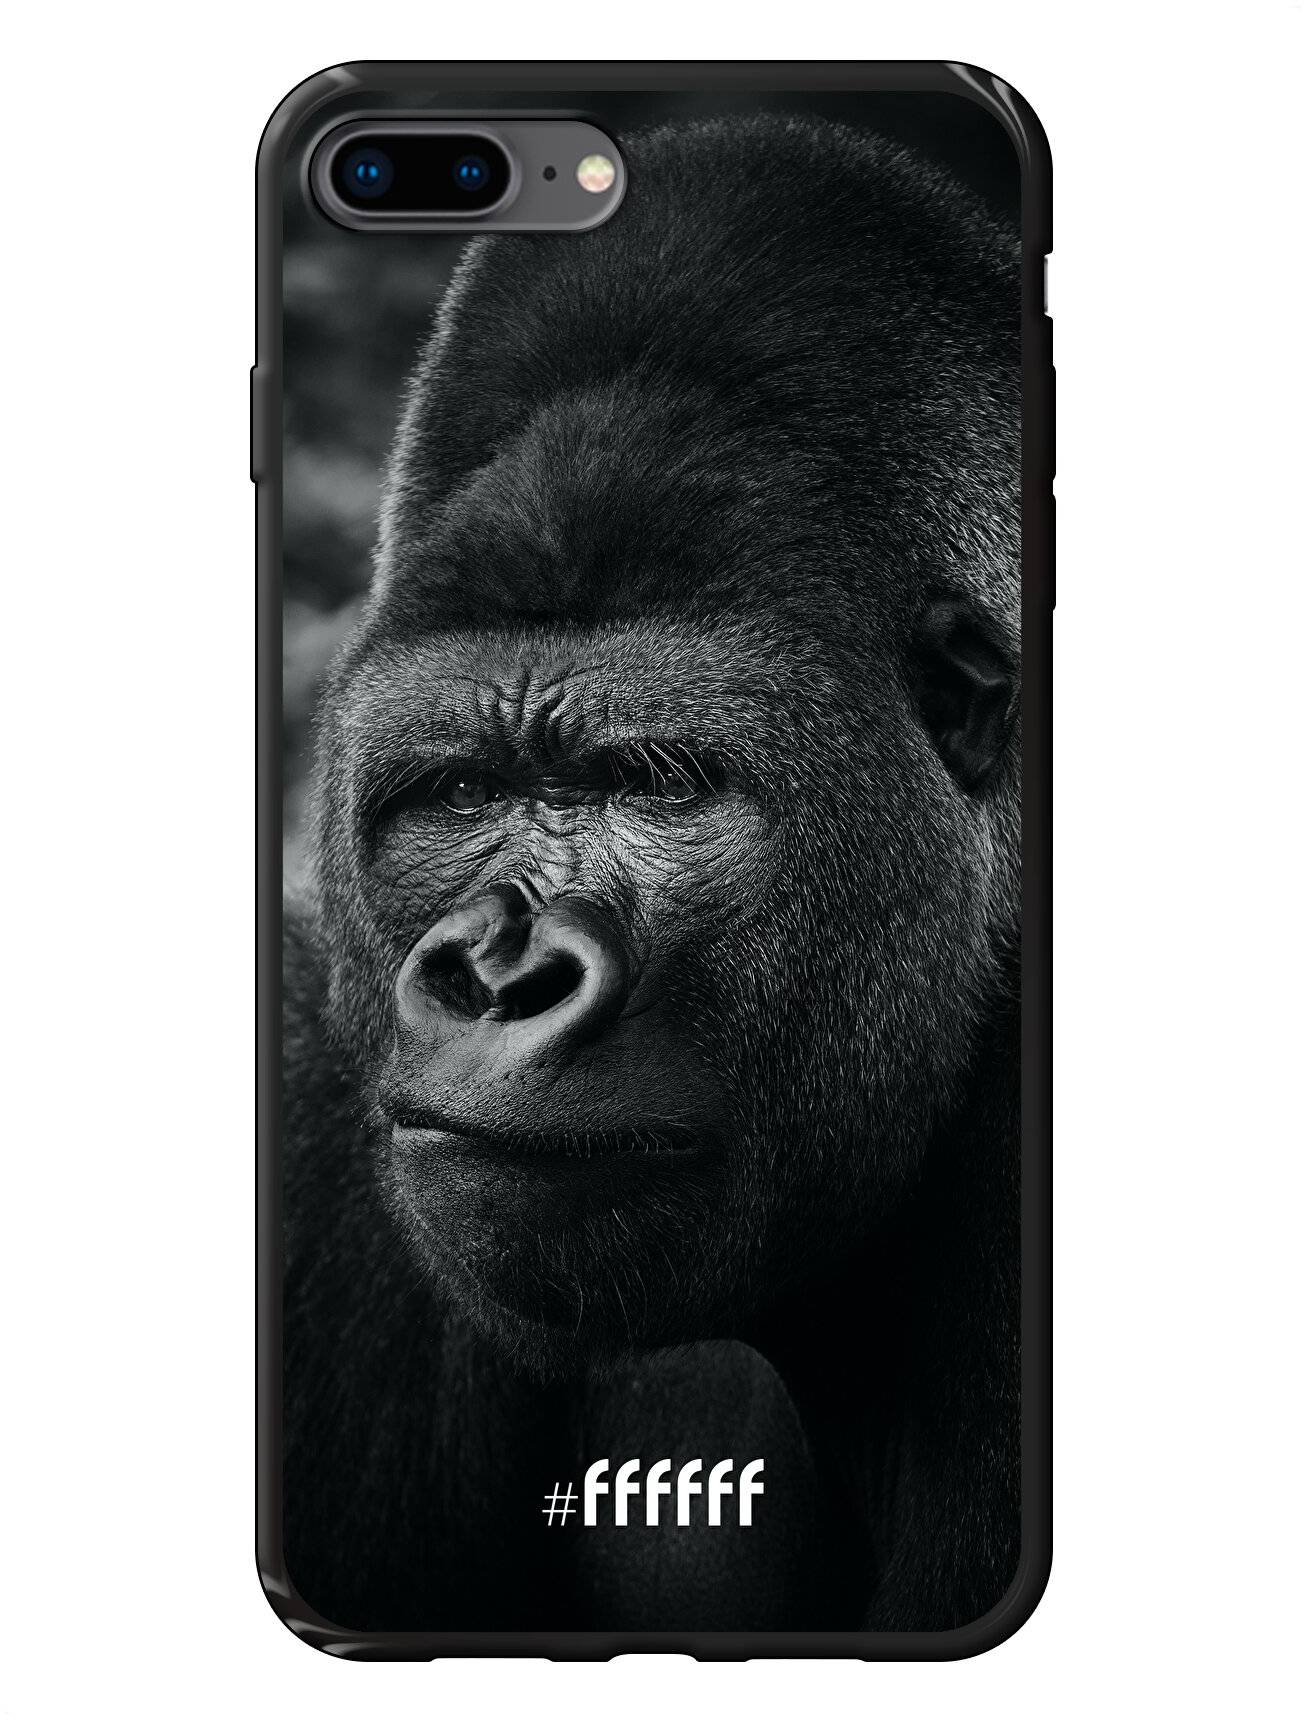 Gorilla iPhone 7 Plus